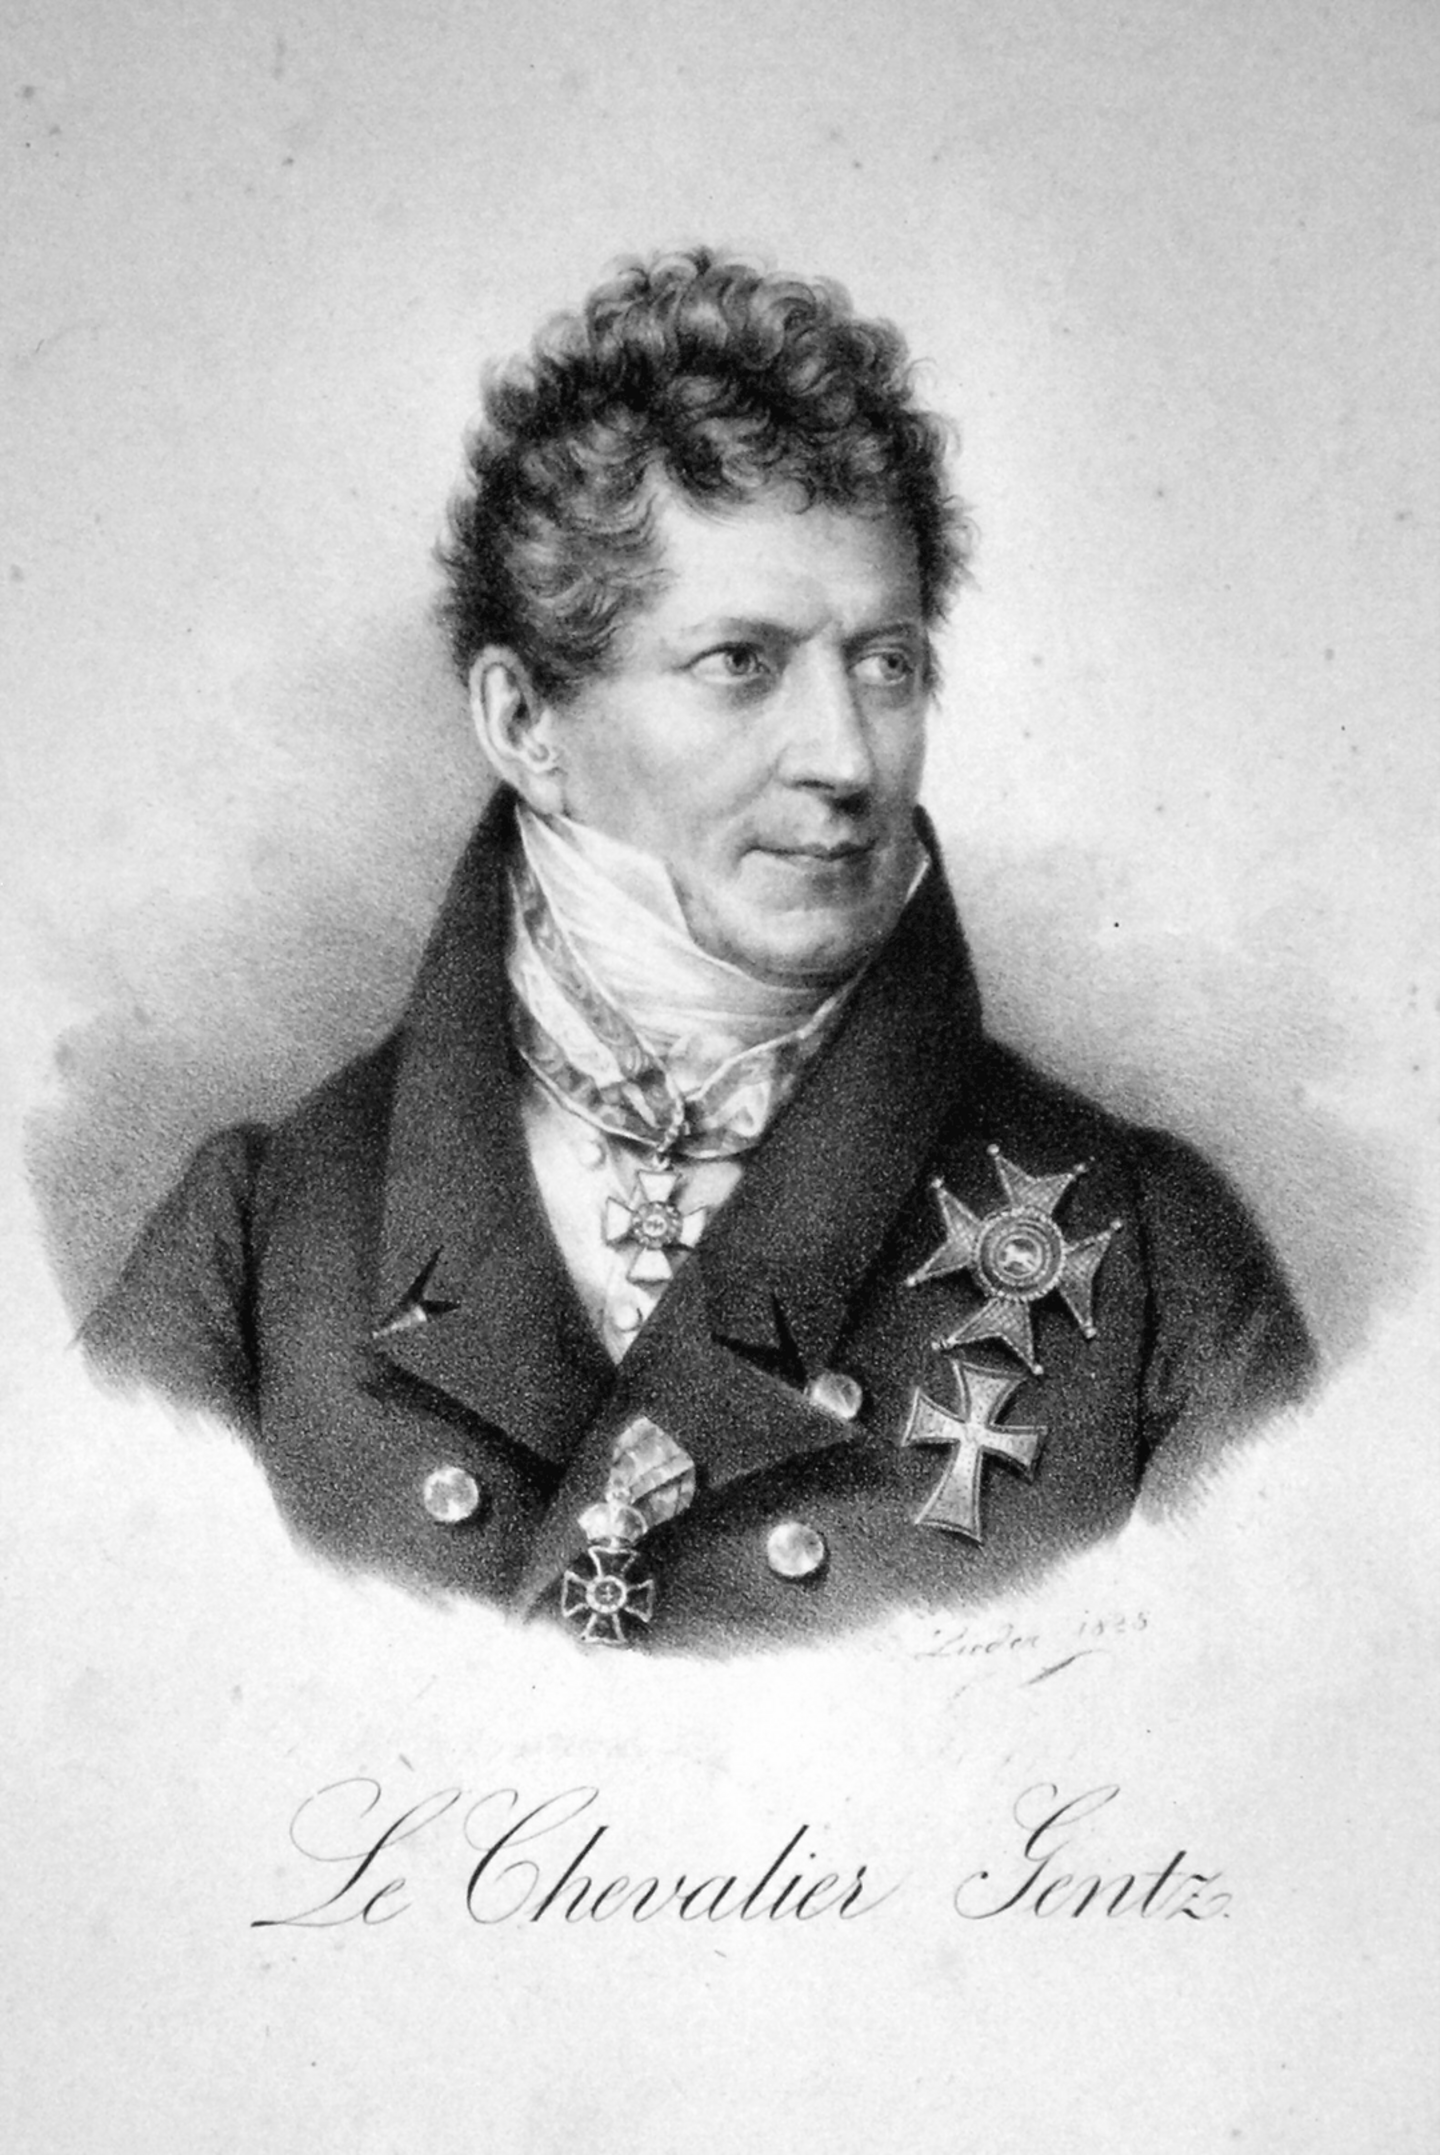 Ein Porträt von dem Diplomat und Staatsmann Friedrich von Gentz, mit dem Blick zur Seite gerichtet. Unter dem Porträt steht die Schrift "Le Chevalier Gentz", also der Ritter Gentz.